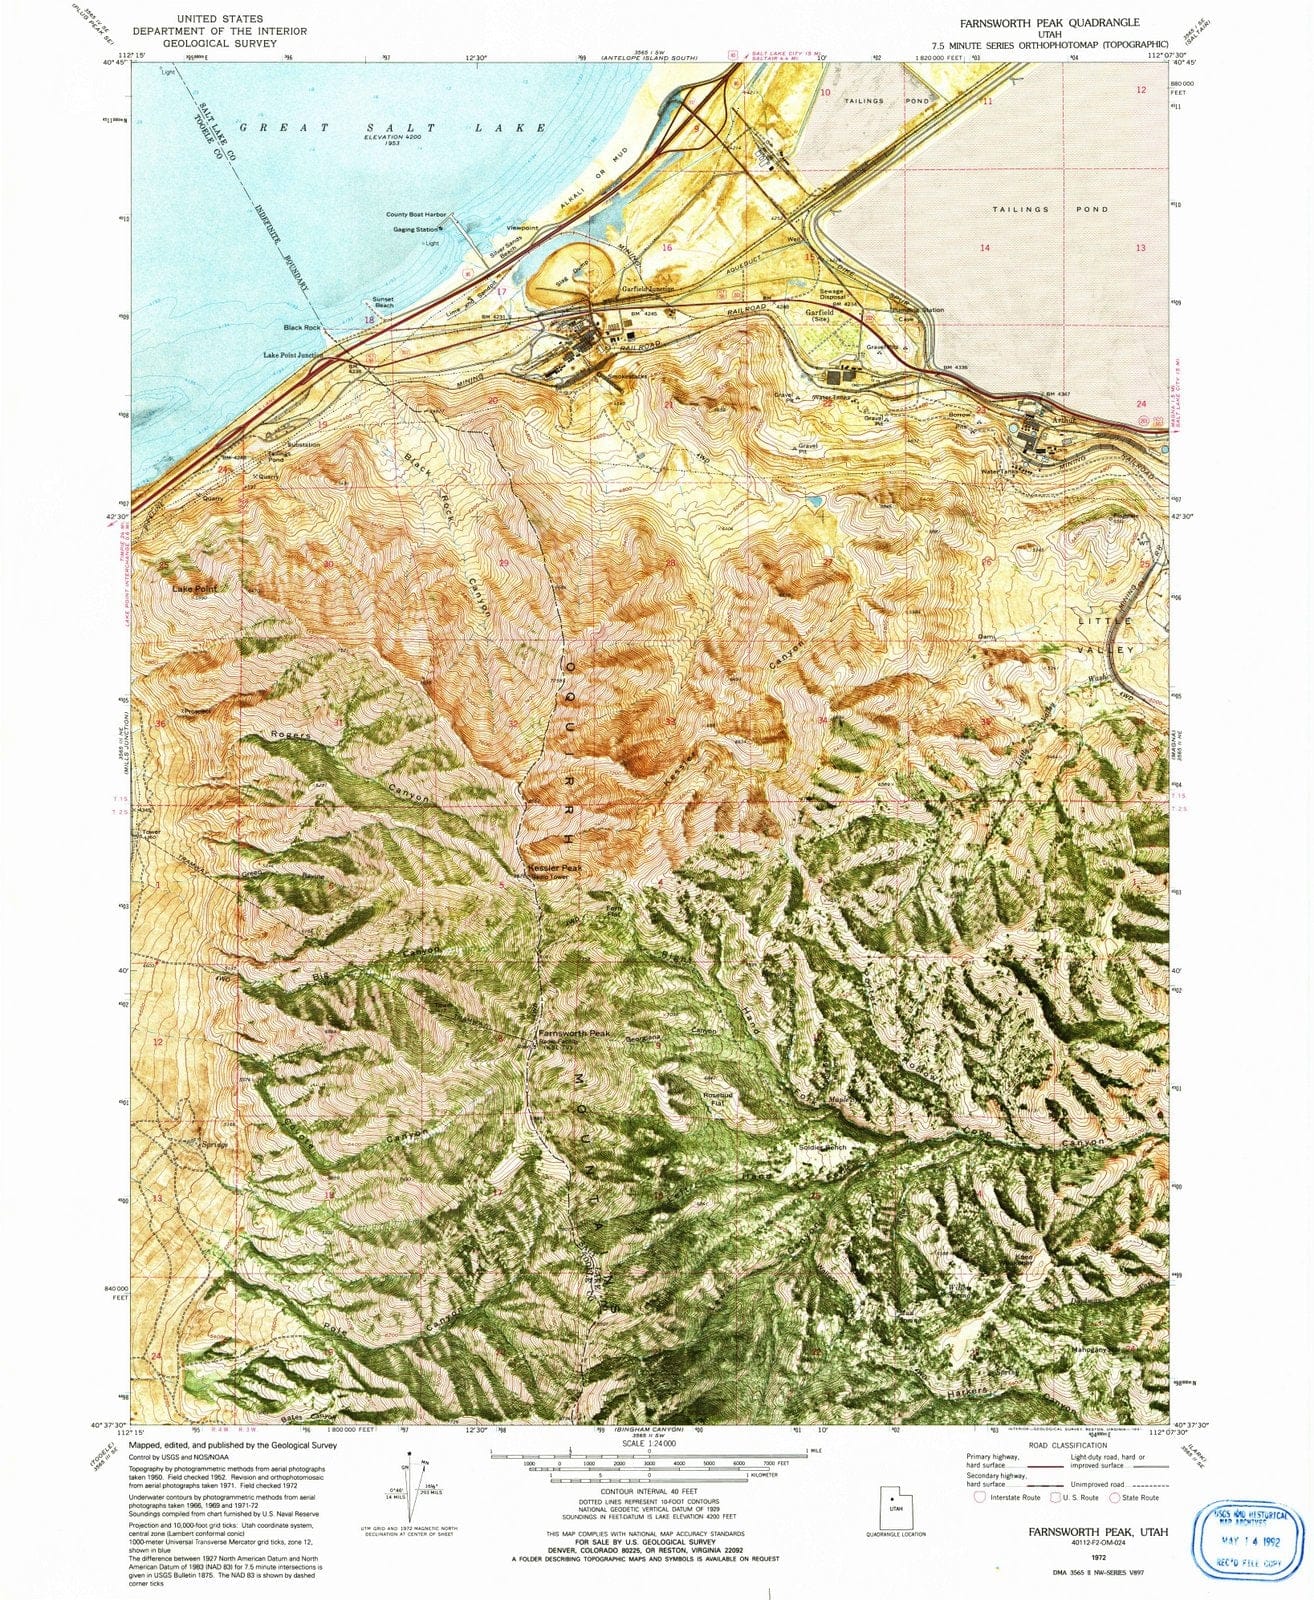 1972 Farnsworth Peak, UT - Utah - USGS Topographic Map